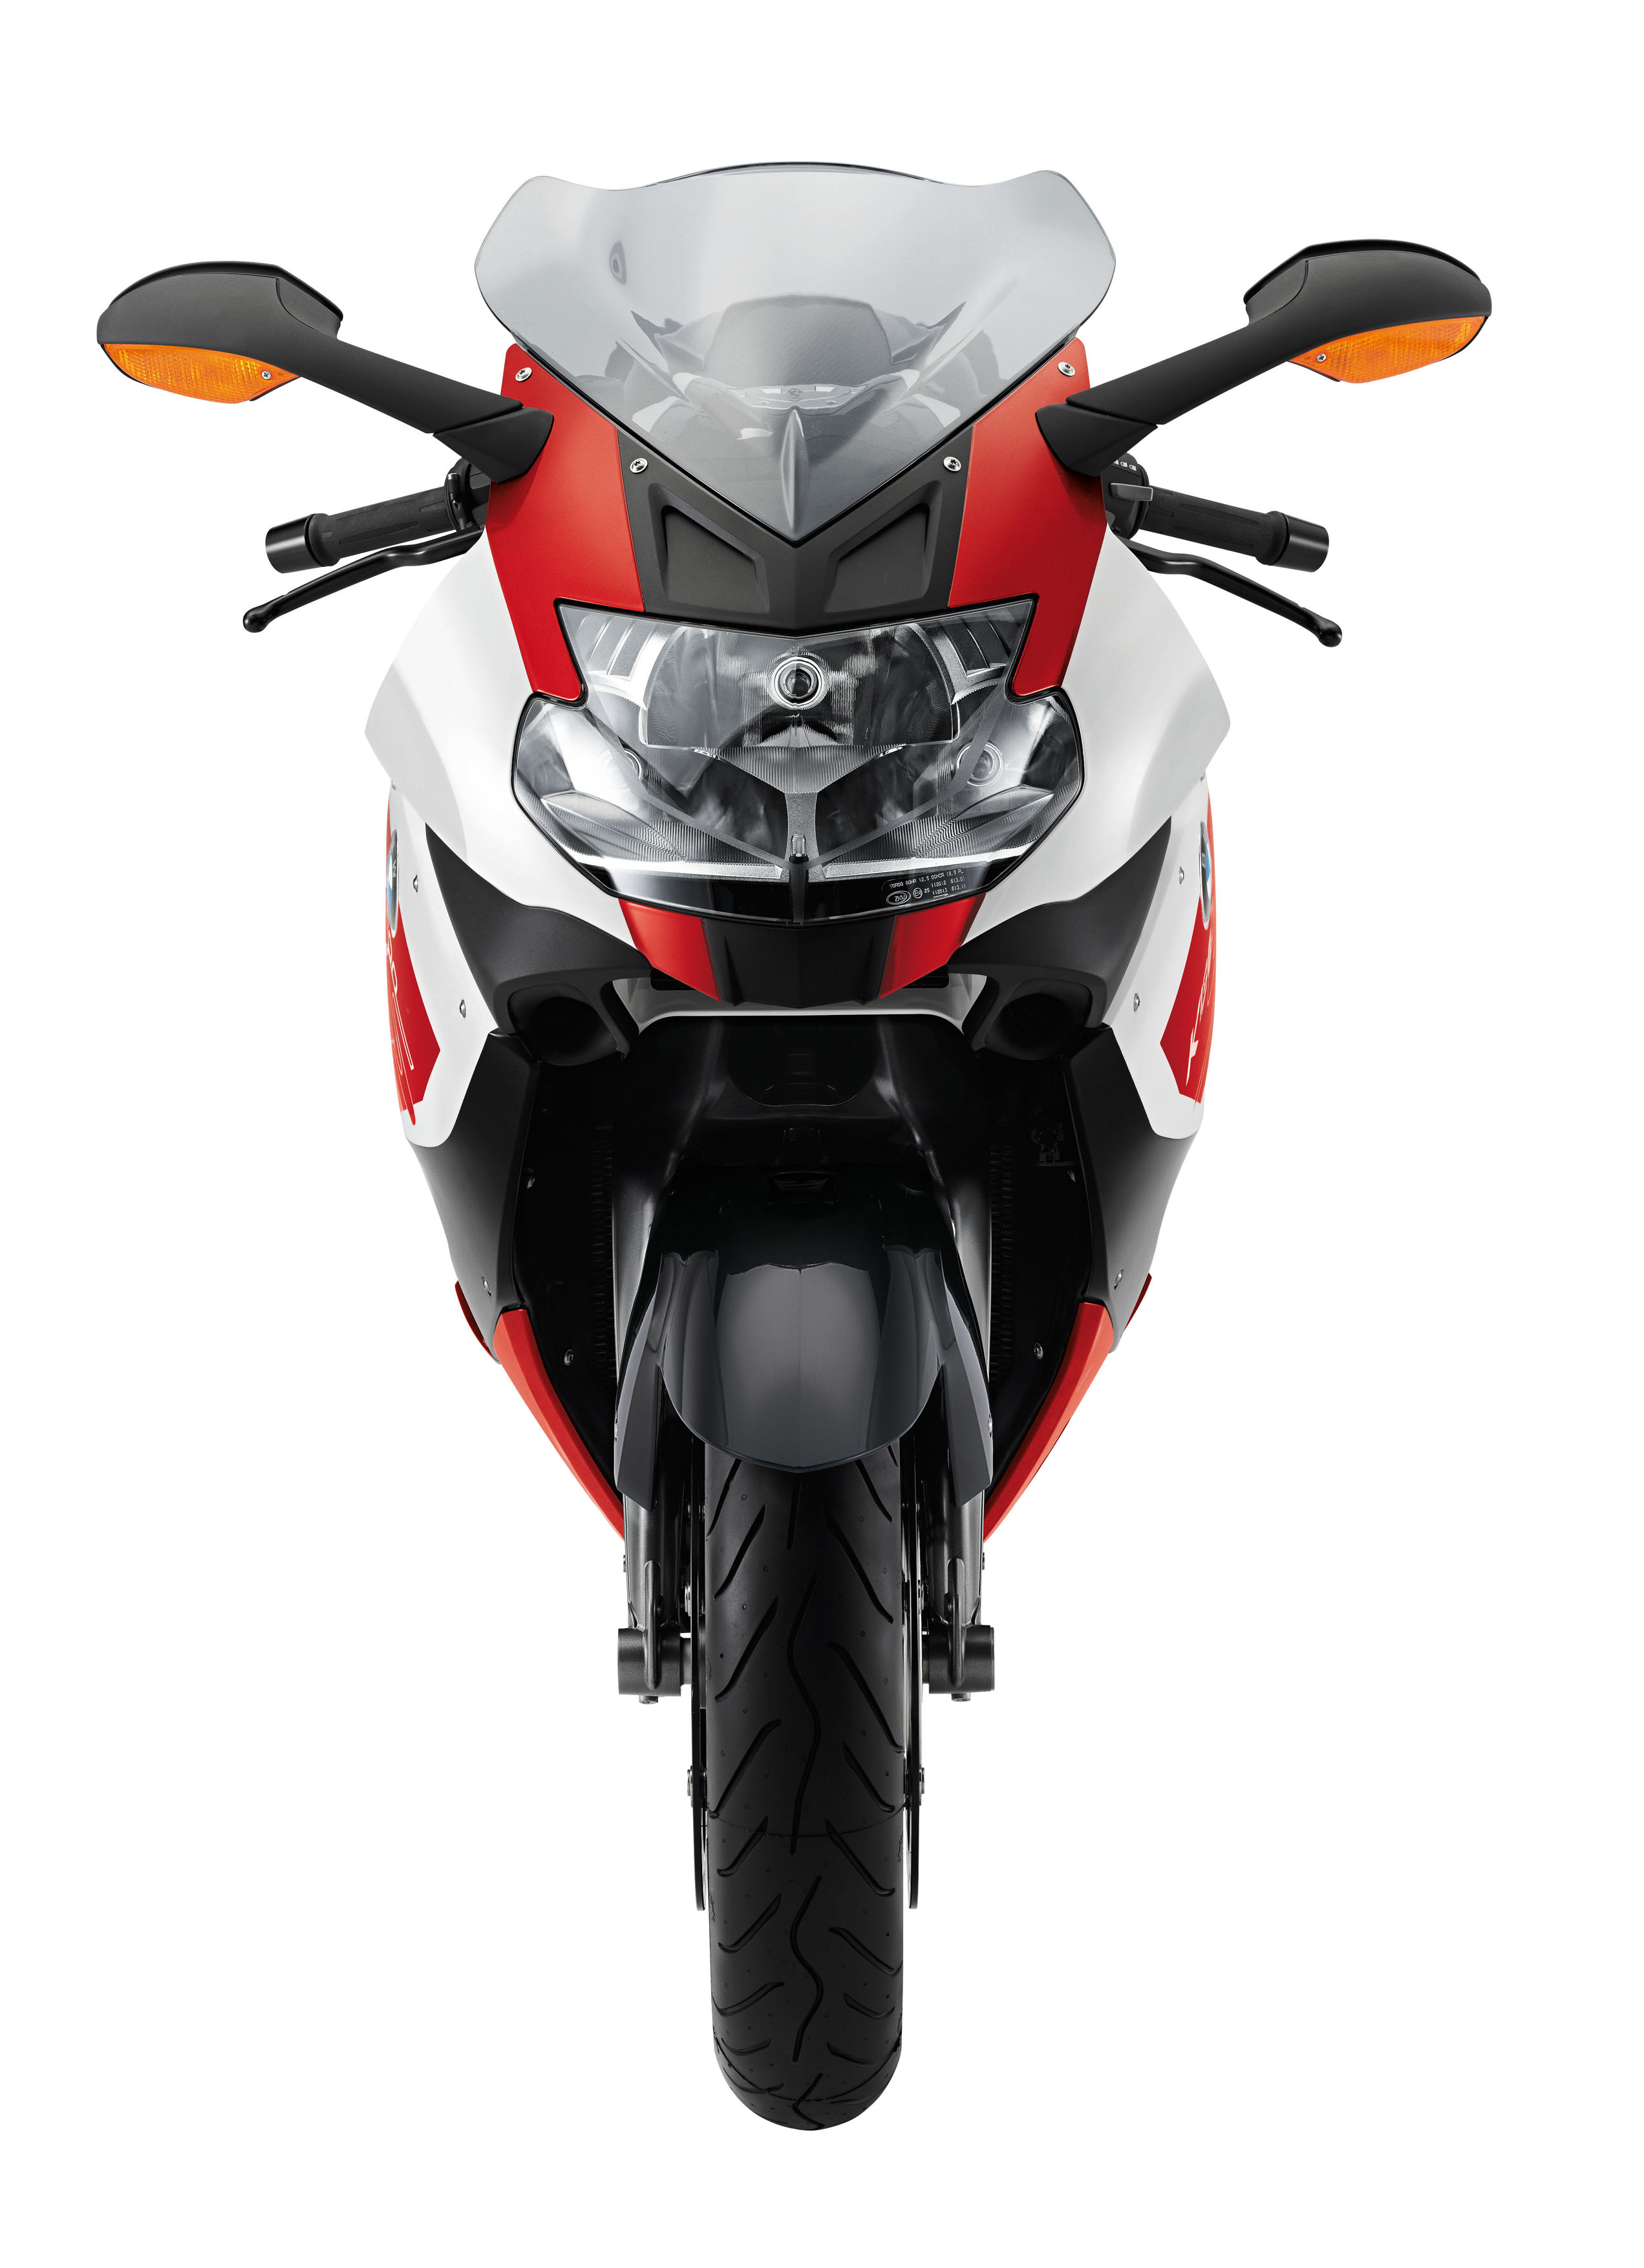 Новая программа «3ASY Ride» - время выбирать мотоцикл!  Мощные мотоциклы BMW Motorrad 2012 года на особых условиях в «Независимость»  